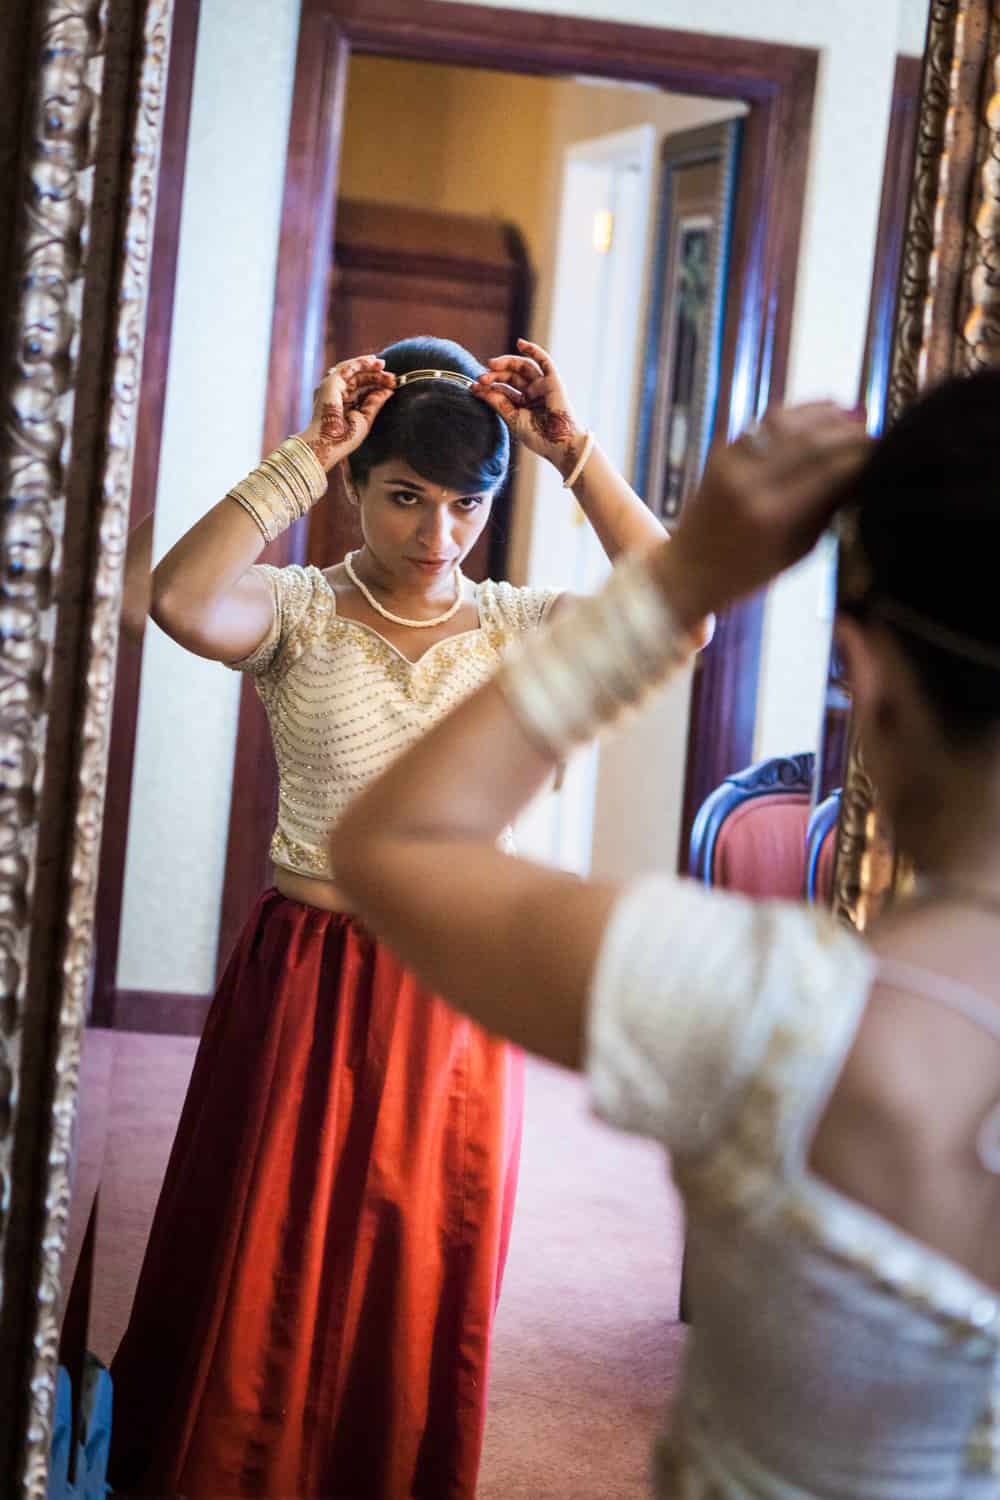 Bride adjusting hair accessory in mirror